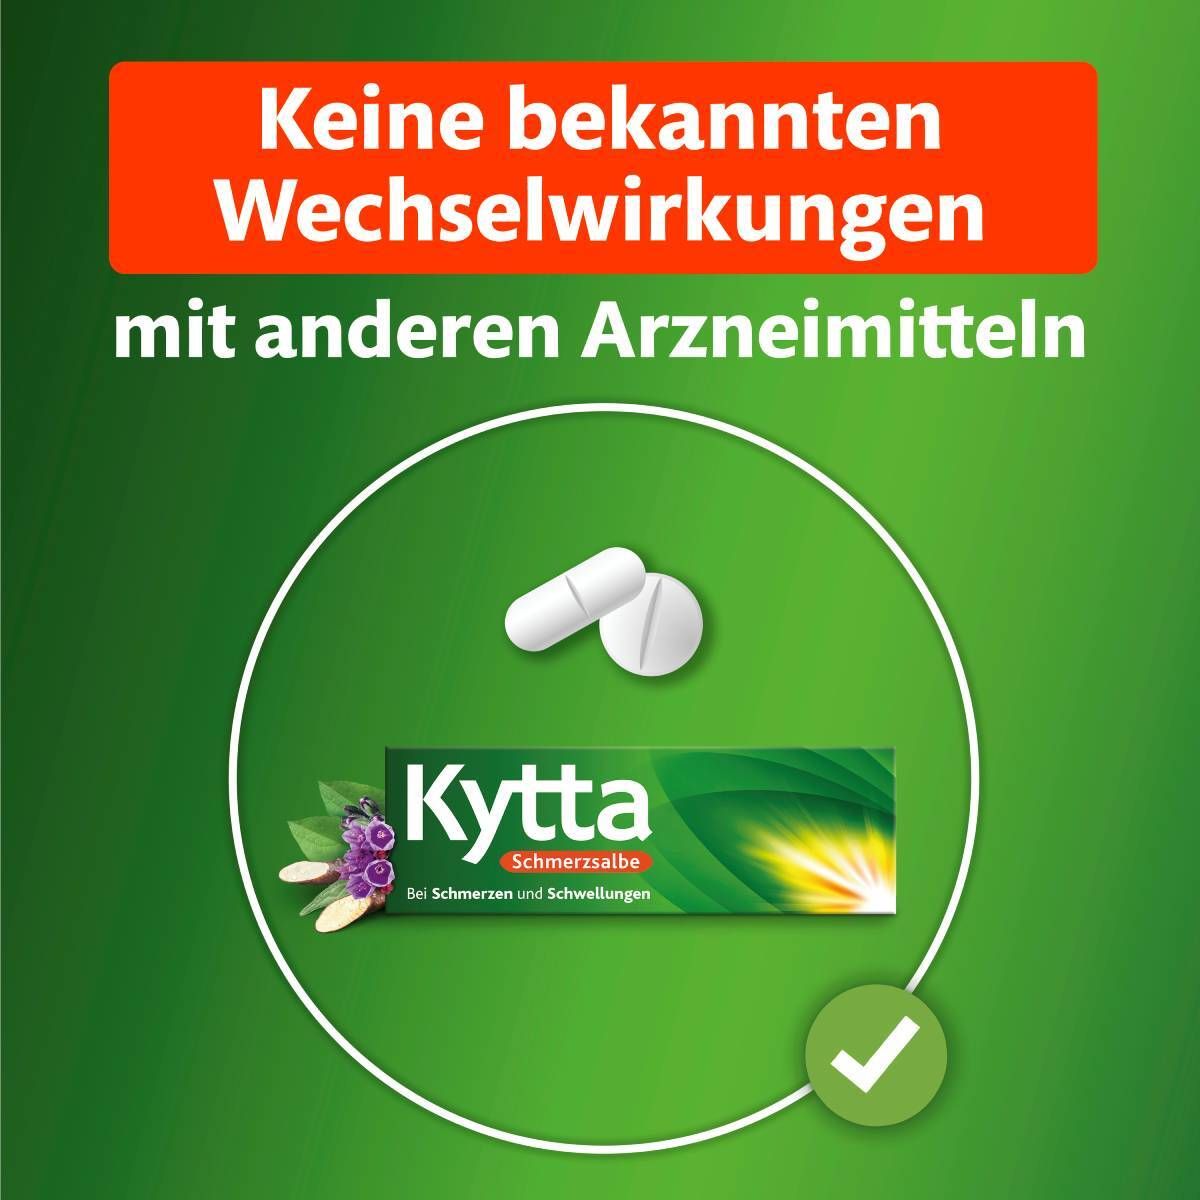 Kytta® Schmerzsalbe- Jetzt 50% Cashback sichern